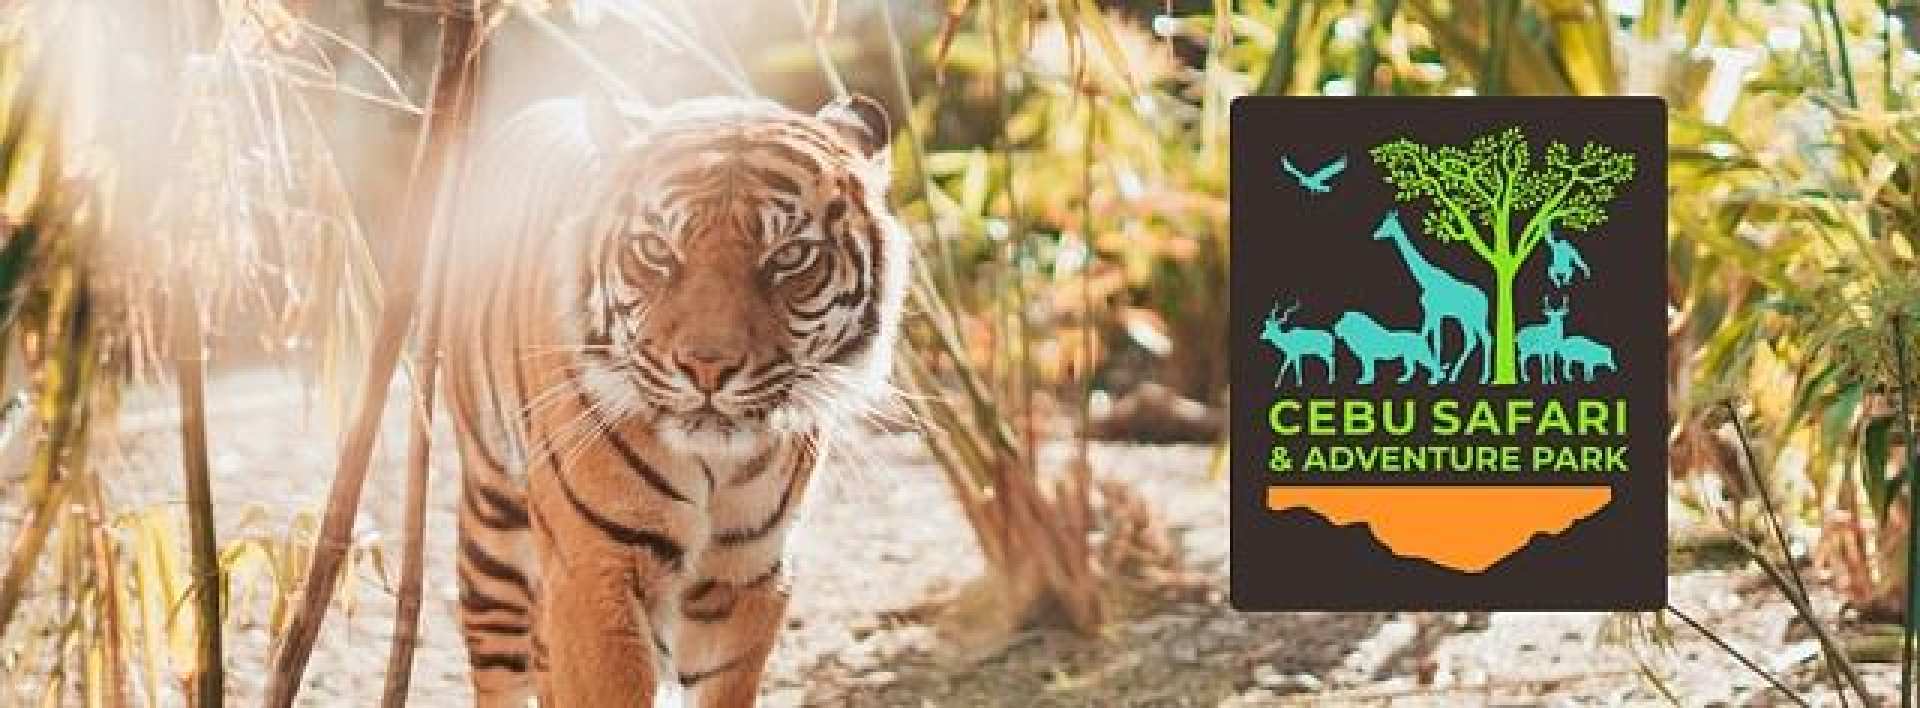 菲律賓-宿霧非洲大草原和白獅野生動物園之旅| 宿霧野生動物園&冒險公園之旅(含門票)